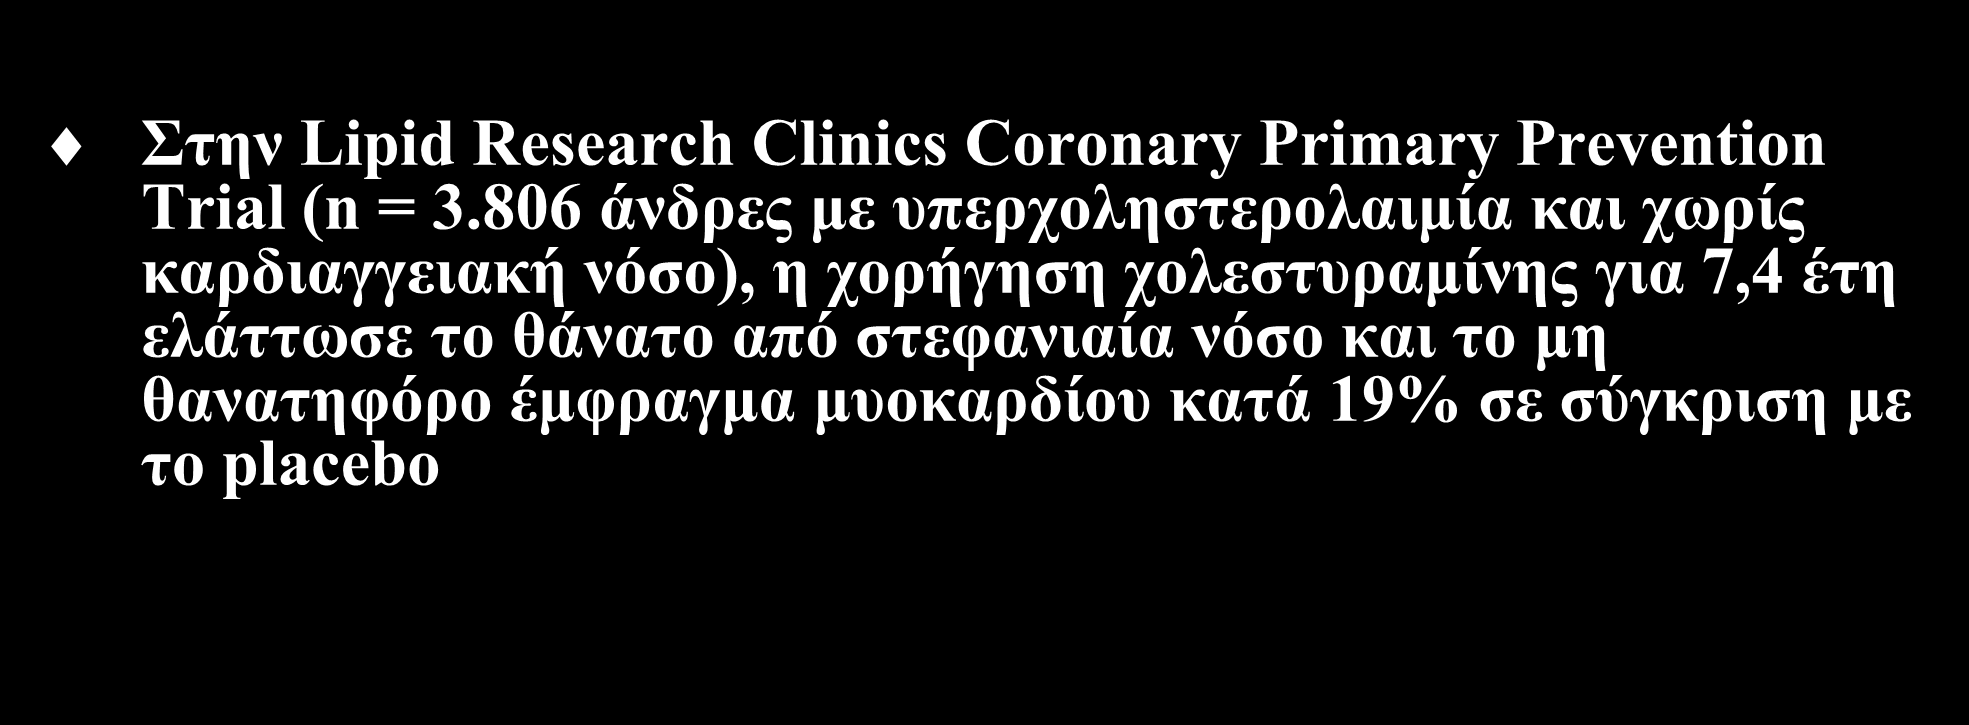 Επίδραση στα καρδιαγγειακά συμβάματα (ΙΙΙ) Στην Lipid Research Clinics Coronary Primary Prevention Trial (n = 3.